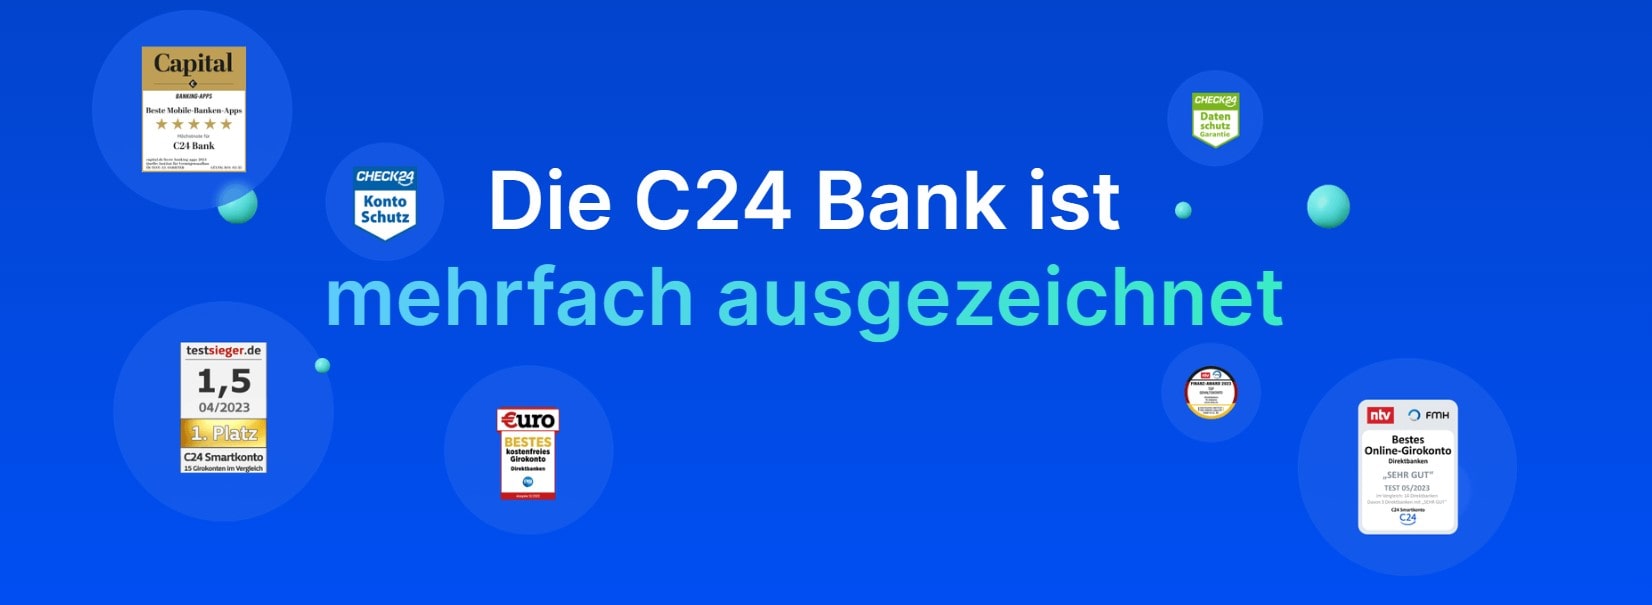 Titelbild zum Beitrag: "C24 Bank Wer steckt dahinter Das solltest du wissen!"